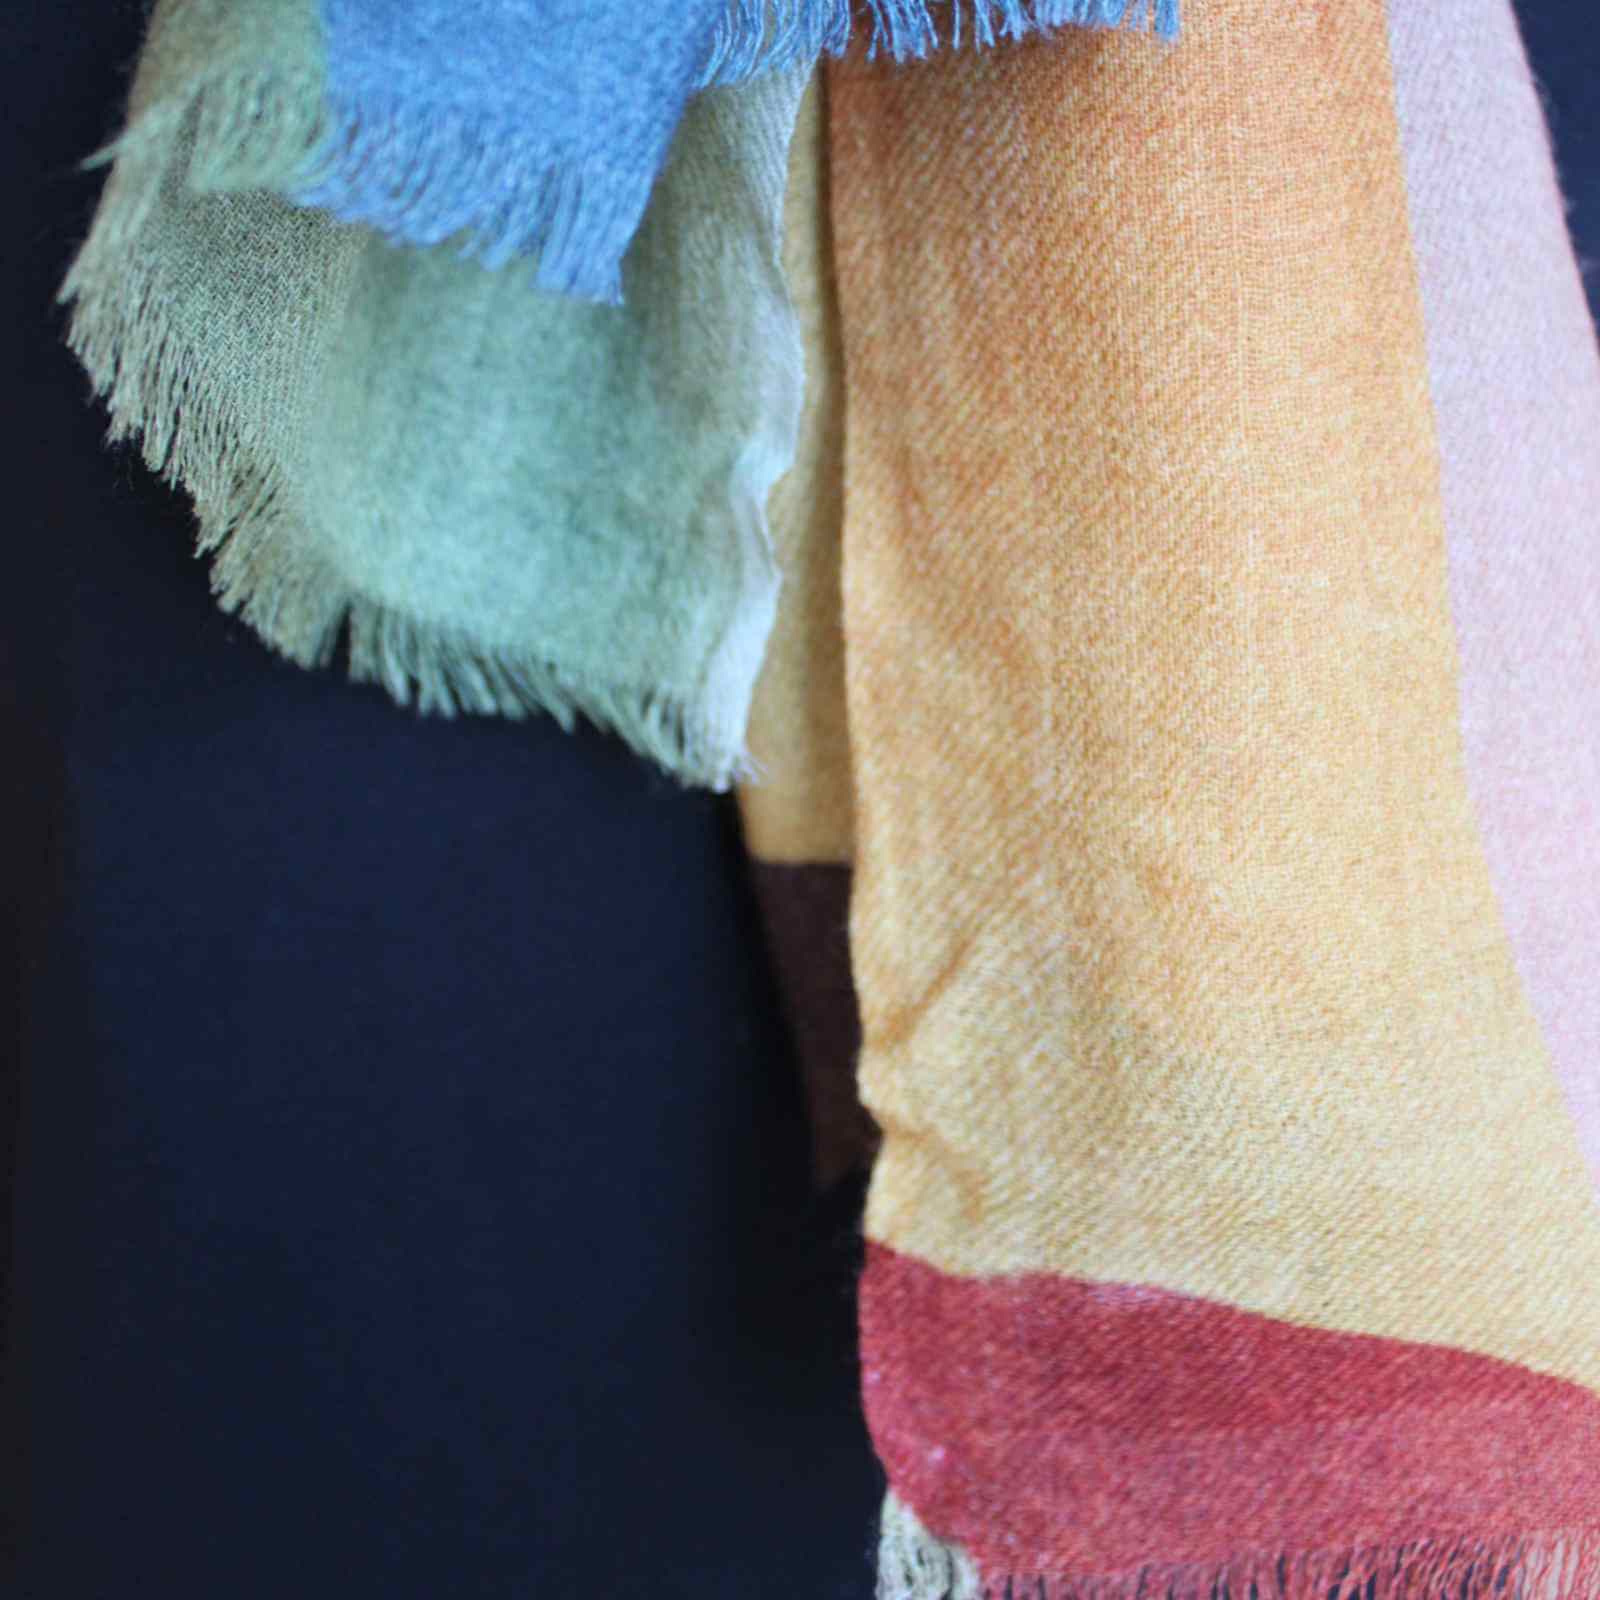 KLare farver på uld silke tørklæde fra Aperitif